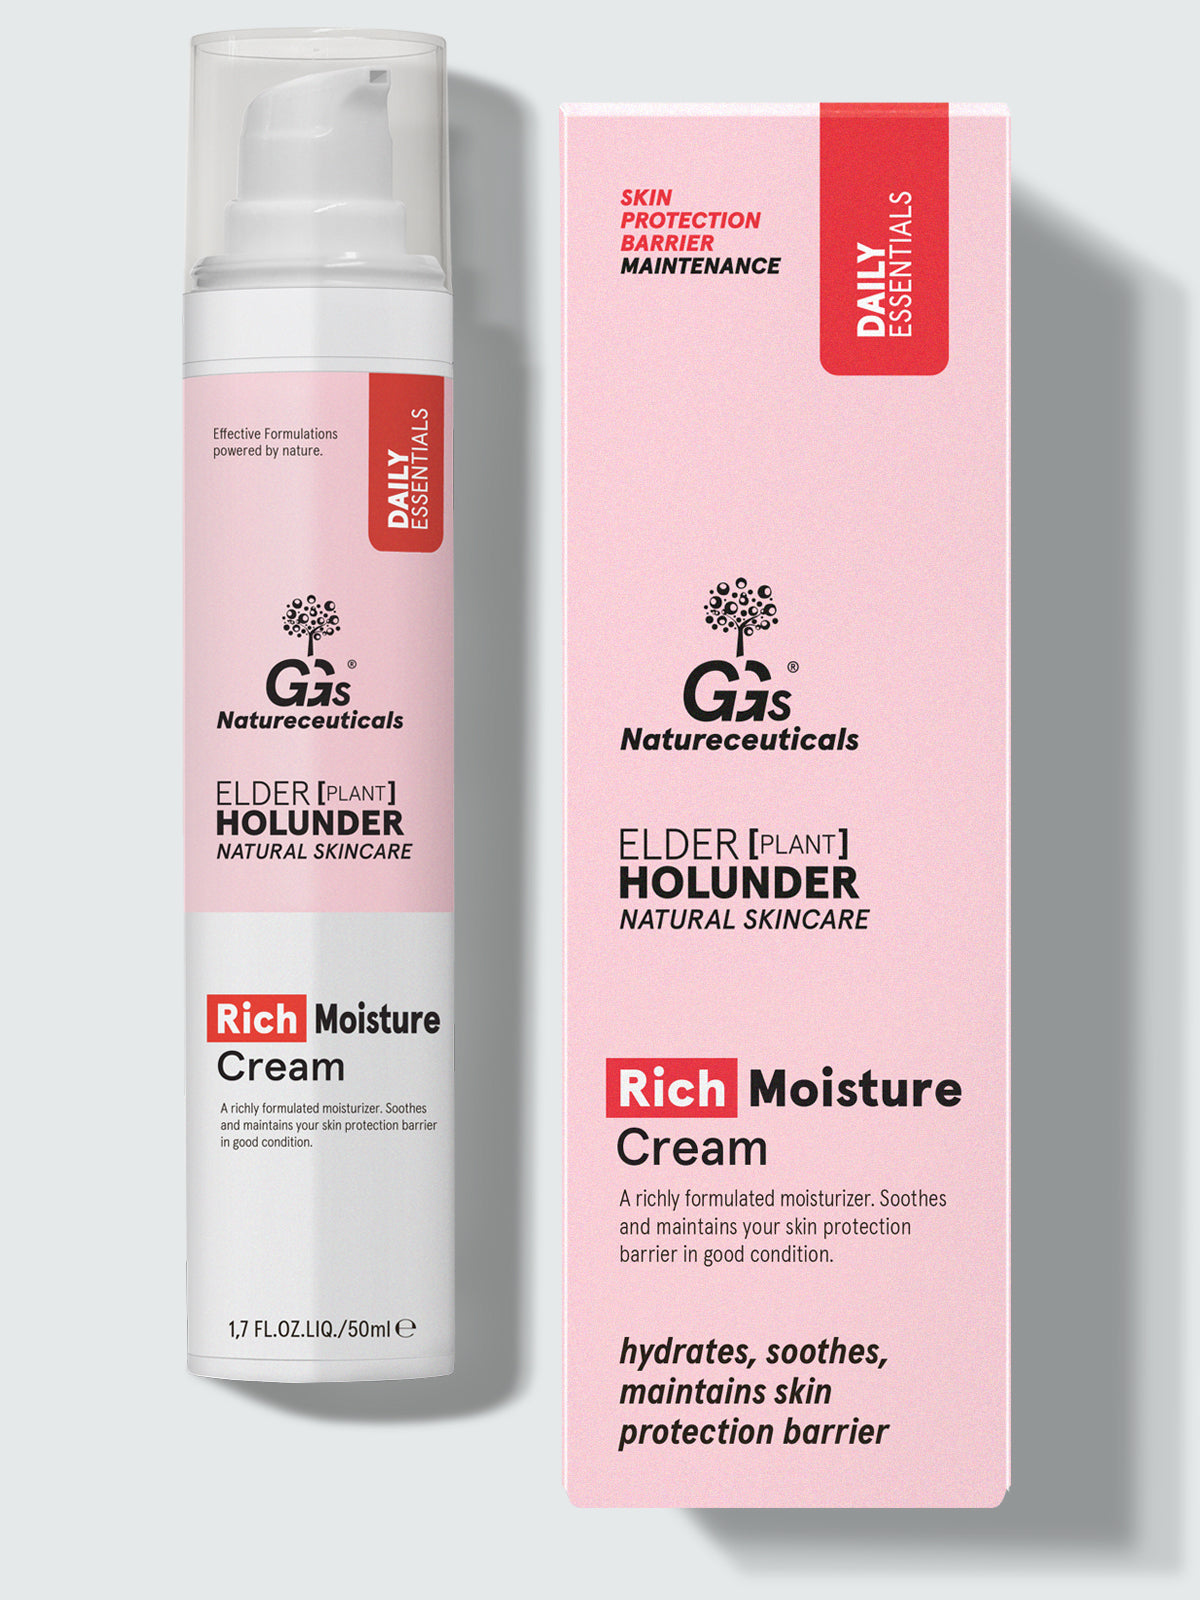 Rich Moisture Cream – Reichhaltige Feuchtigkeitscreme für trockene Haut | GGs Natureceuticals